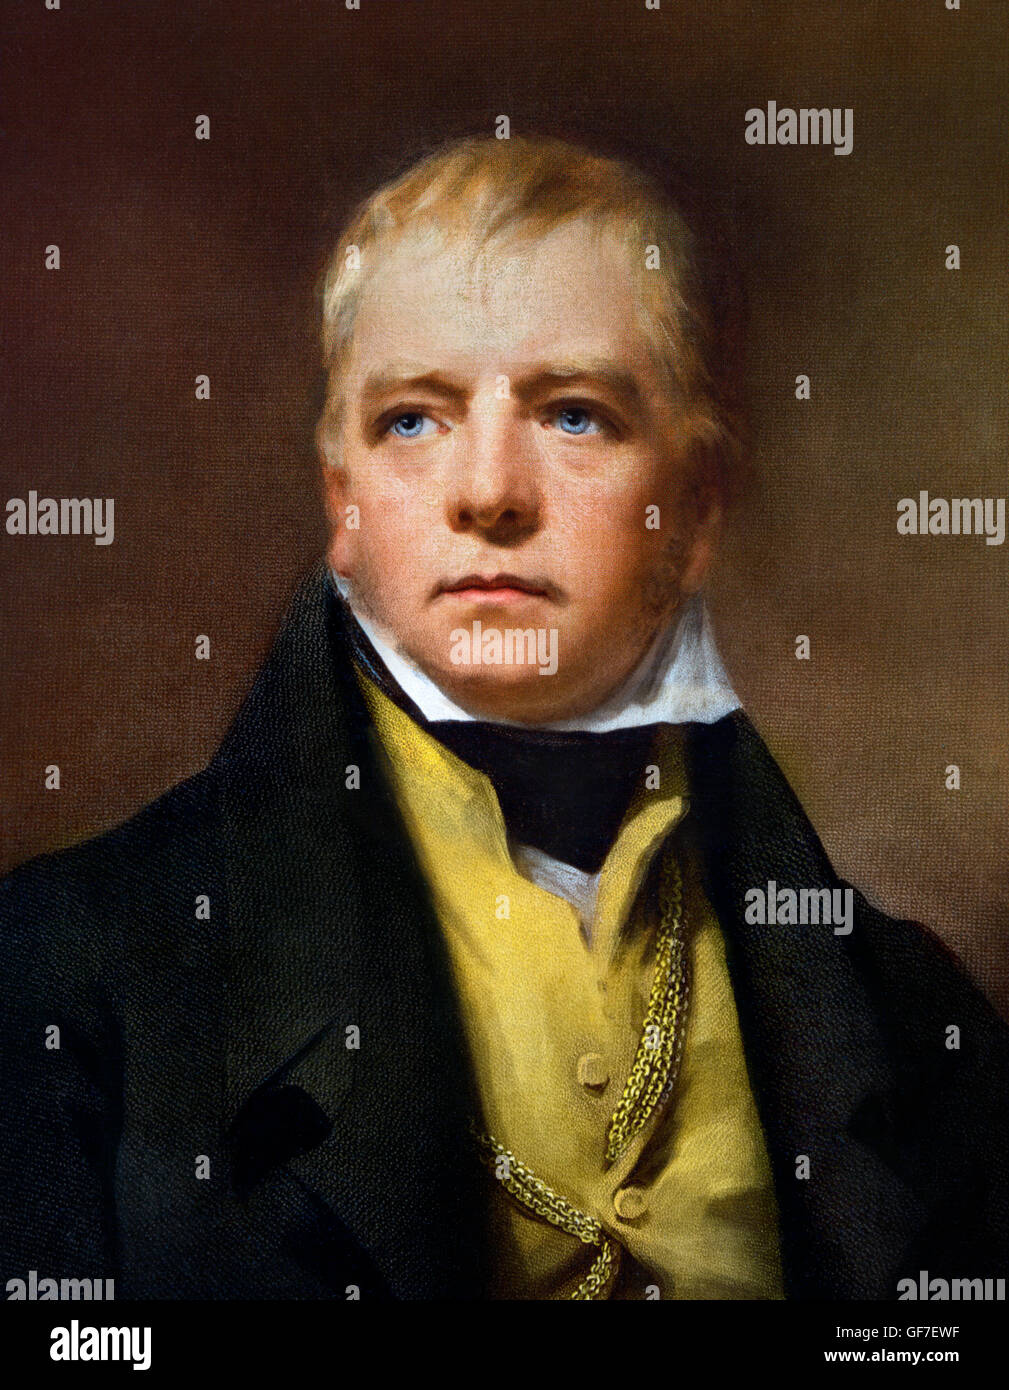 Sir Walter Scott. Ritratto del romanziere scozzese Walter Scott (1771-1832) . Riproduzione dopo un ritratto da Henry Raeburn,1822. Foto Stock